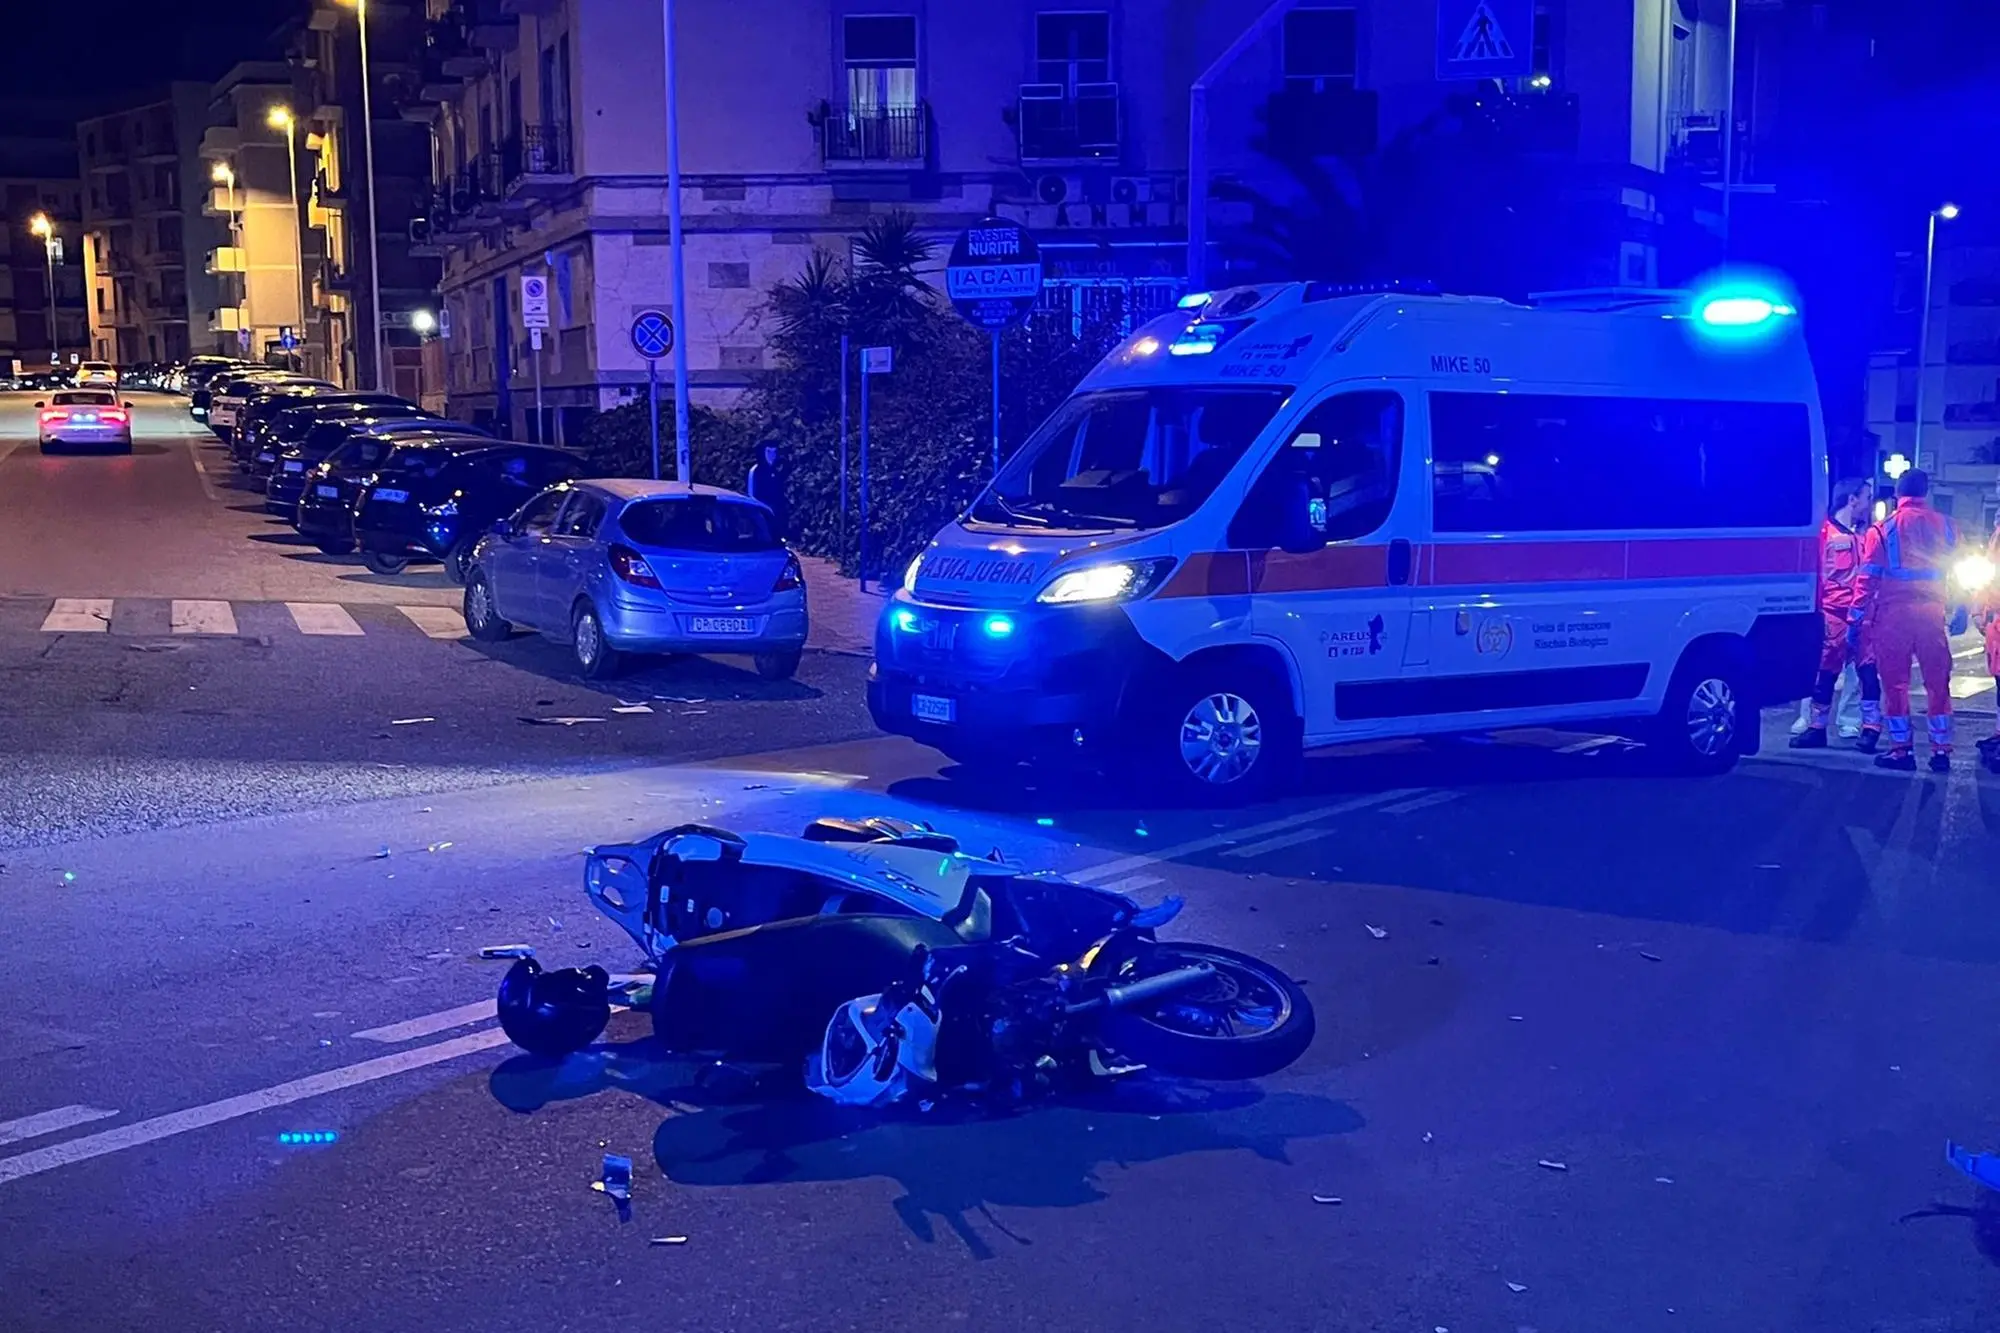 Lo scooter coinvolto nell'incidente (Foto: Francesco Pinna)